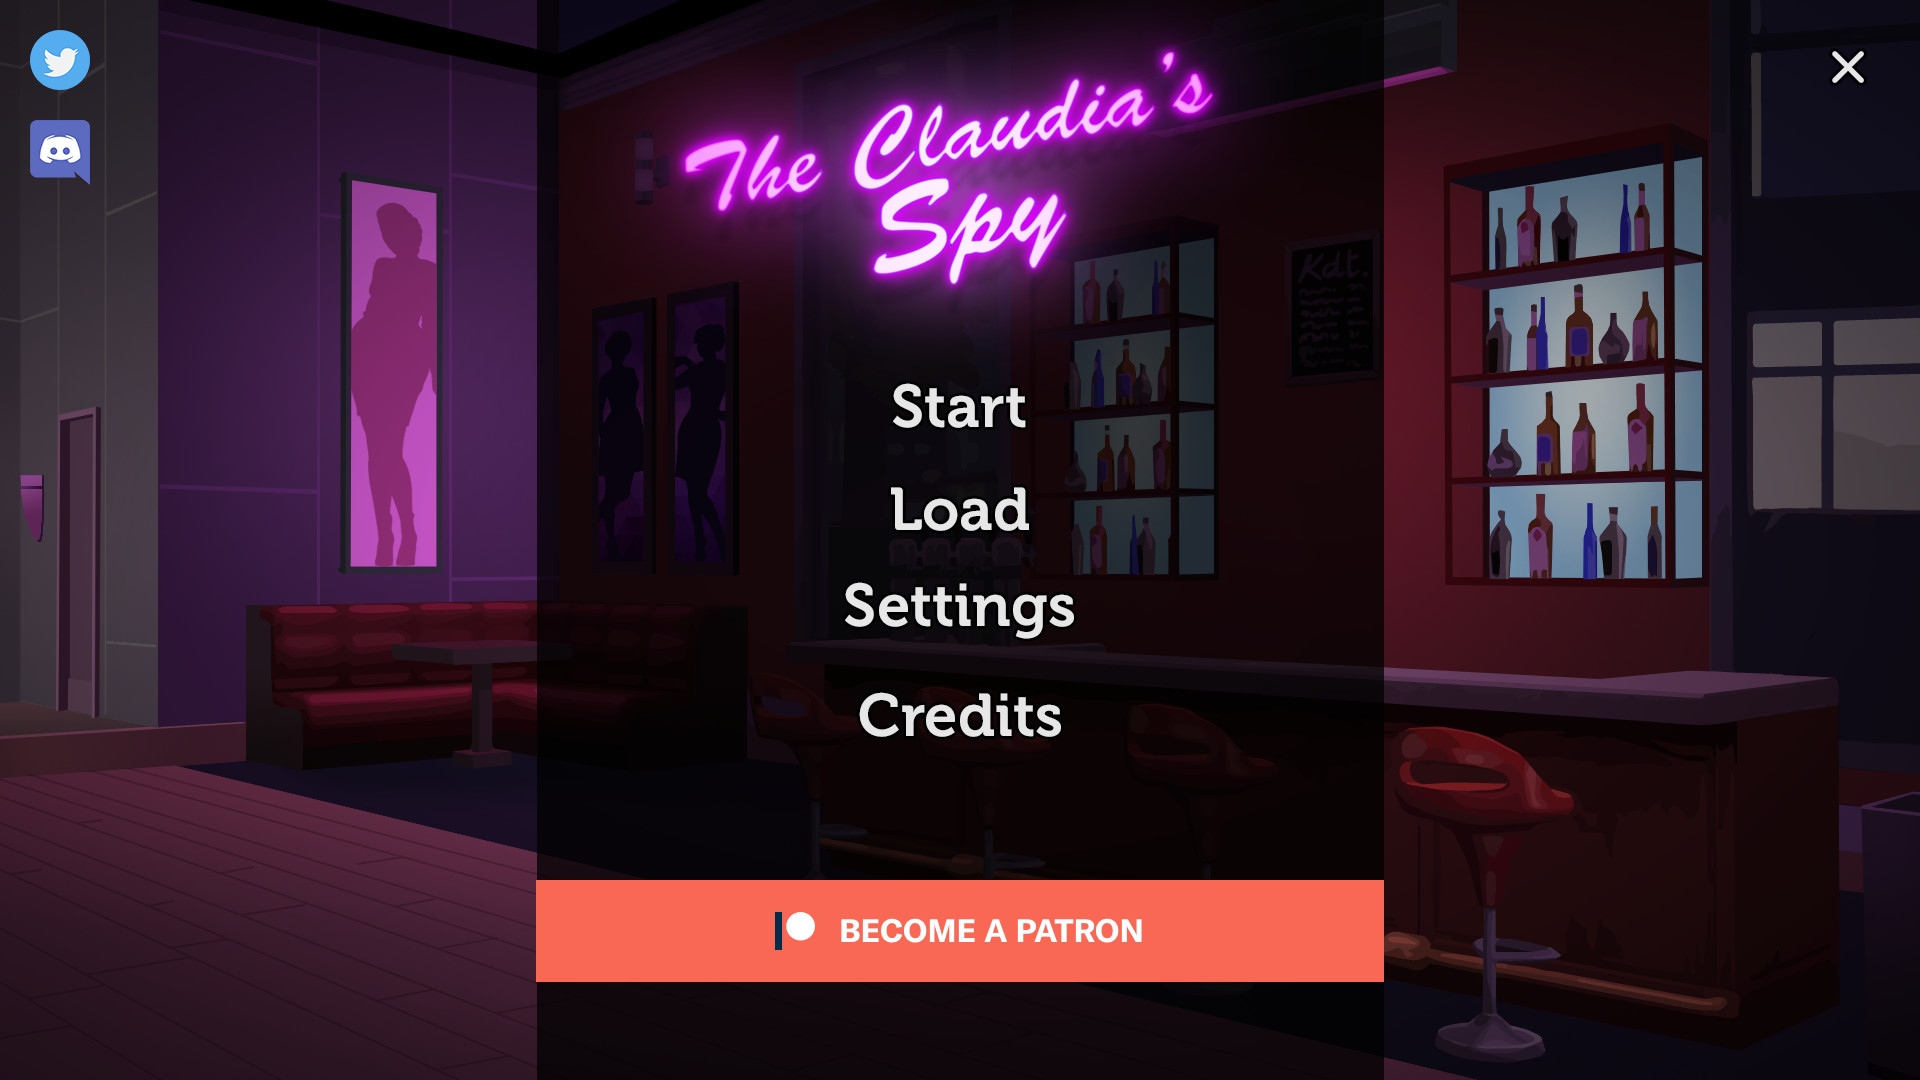 Claudia's Spy Main Image